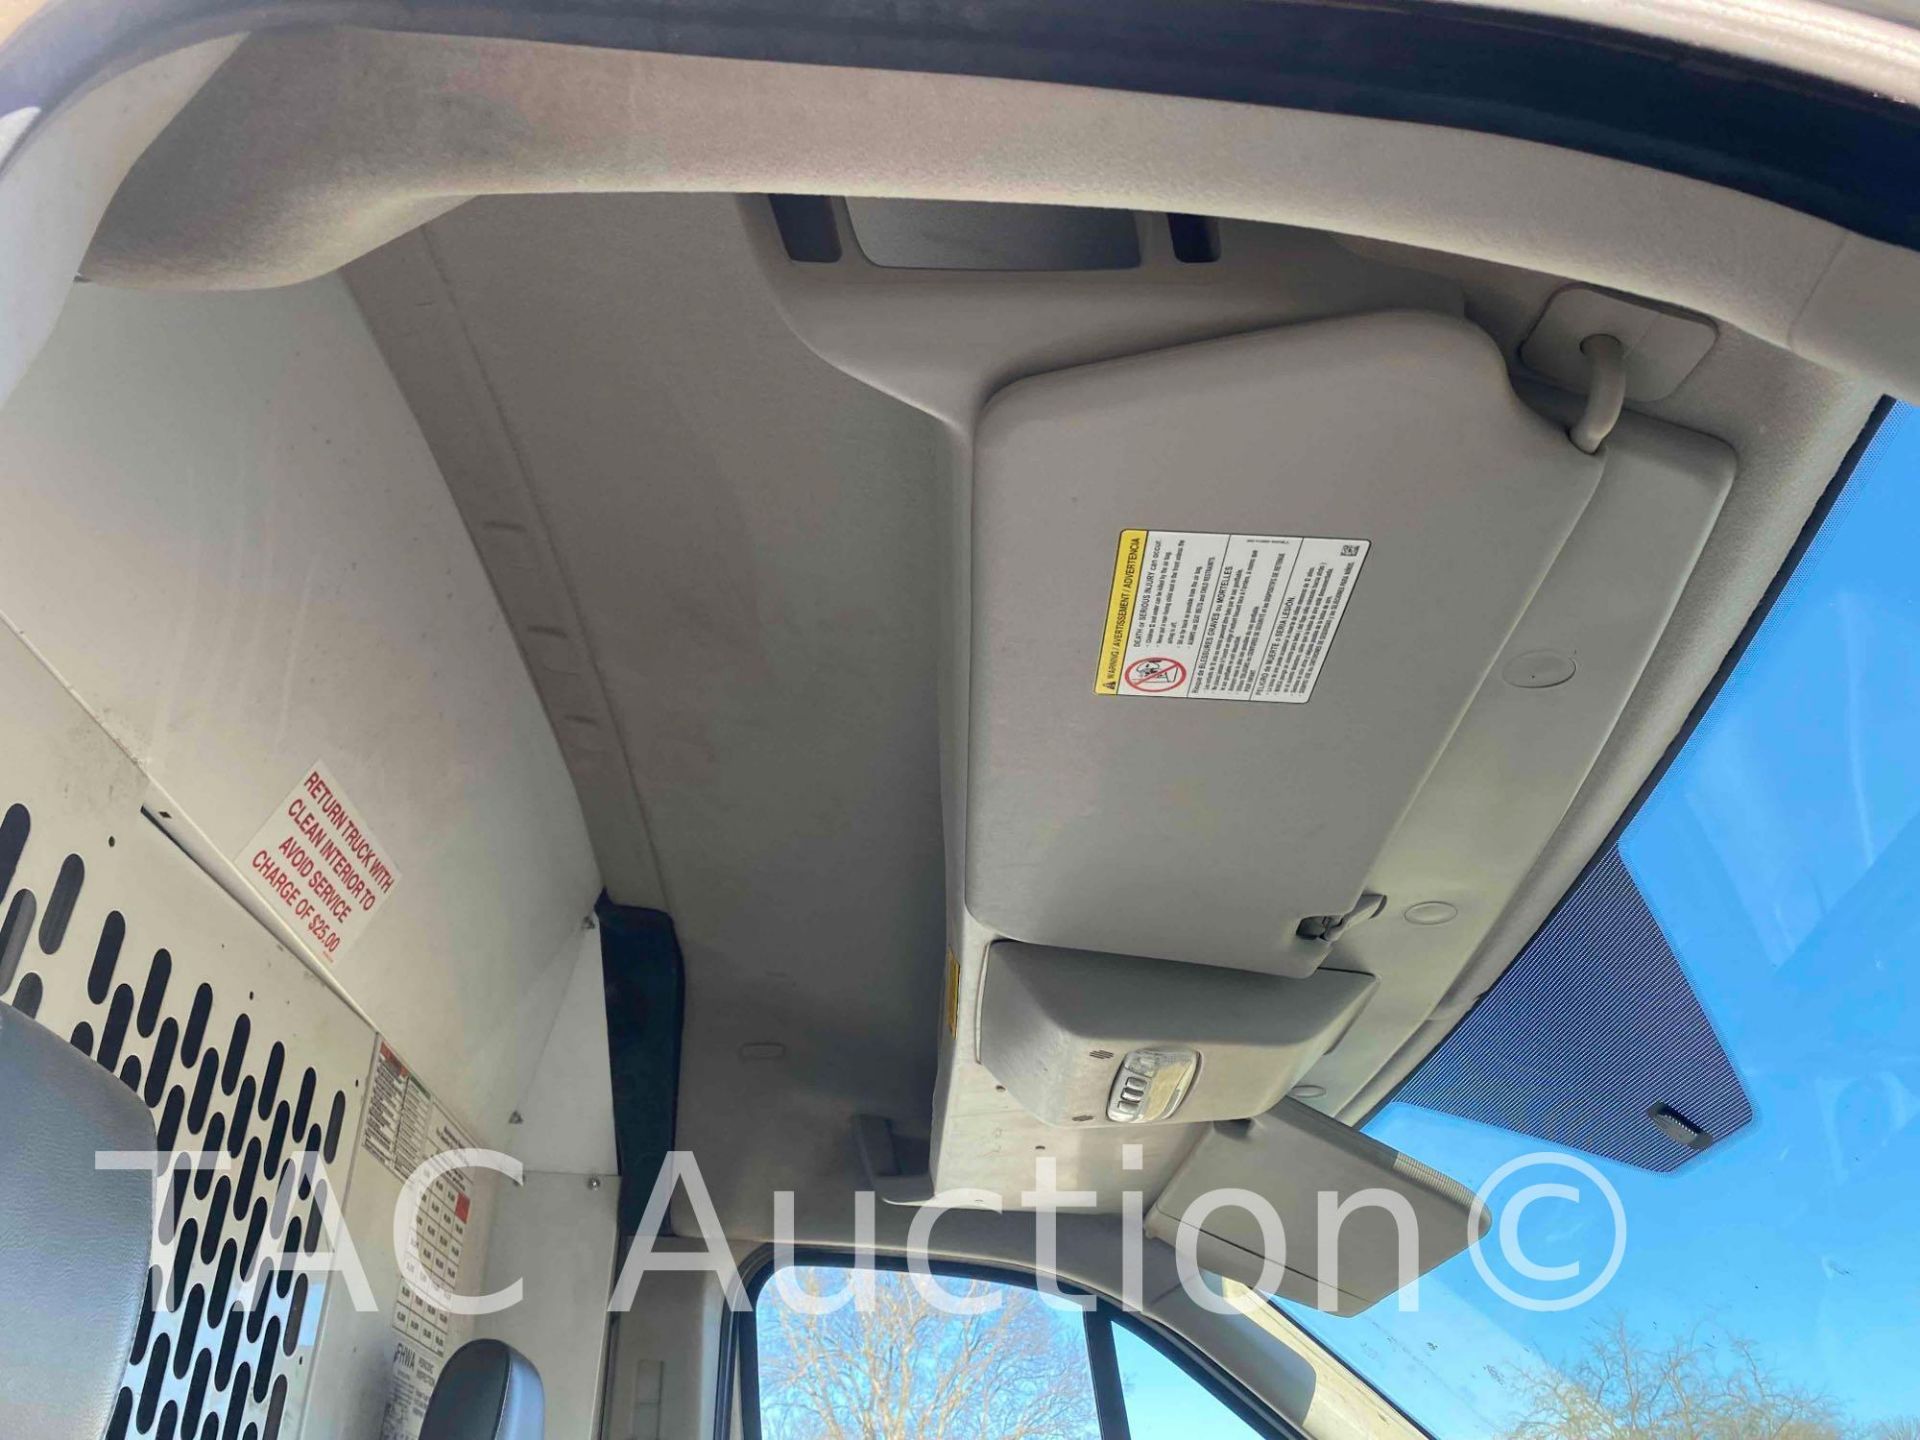 2019 Ford Transit 150 Cargo Van - Image 21 of 49